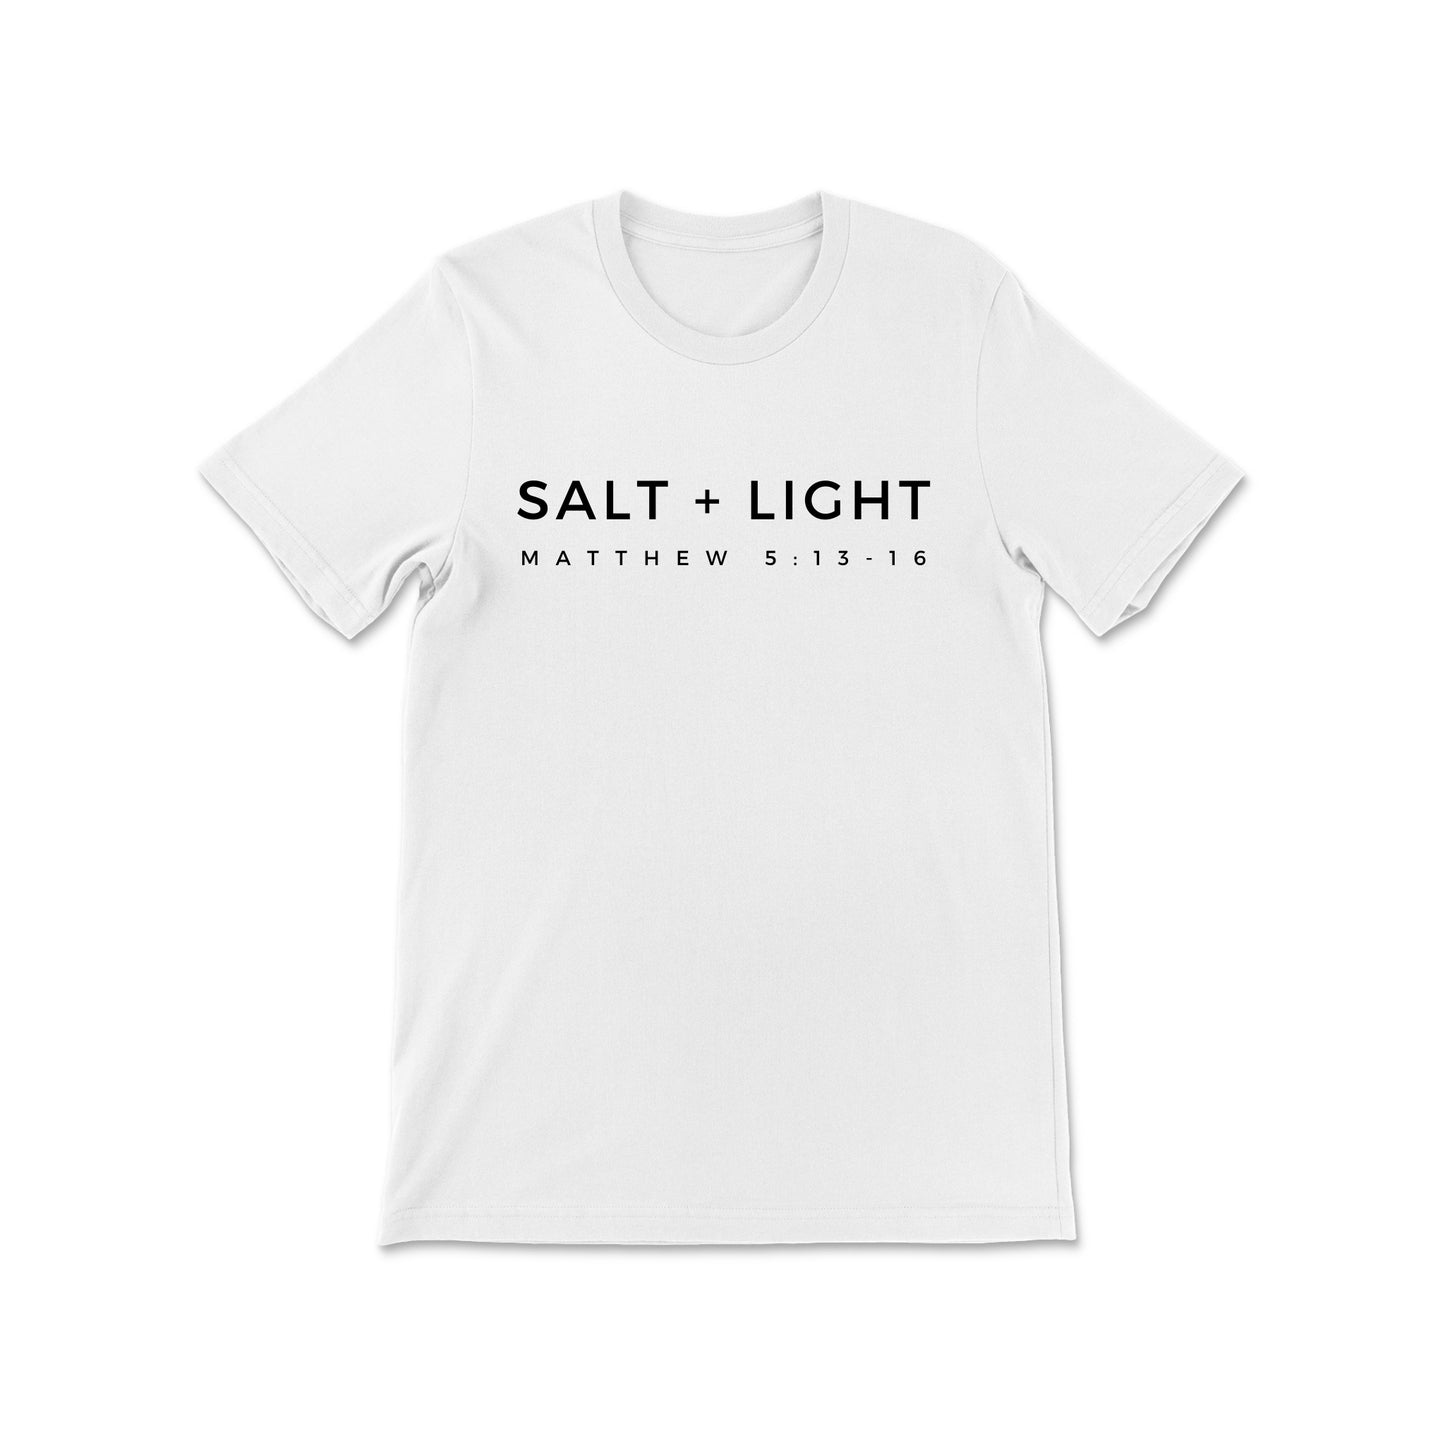 SALT + LIGHT TEE